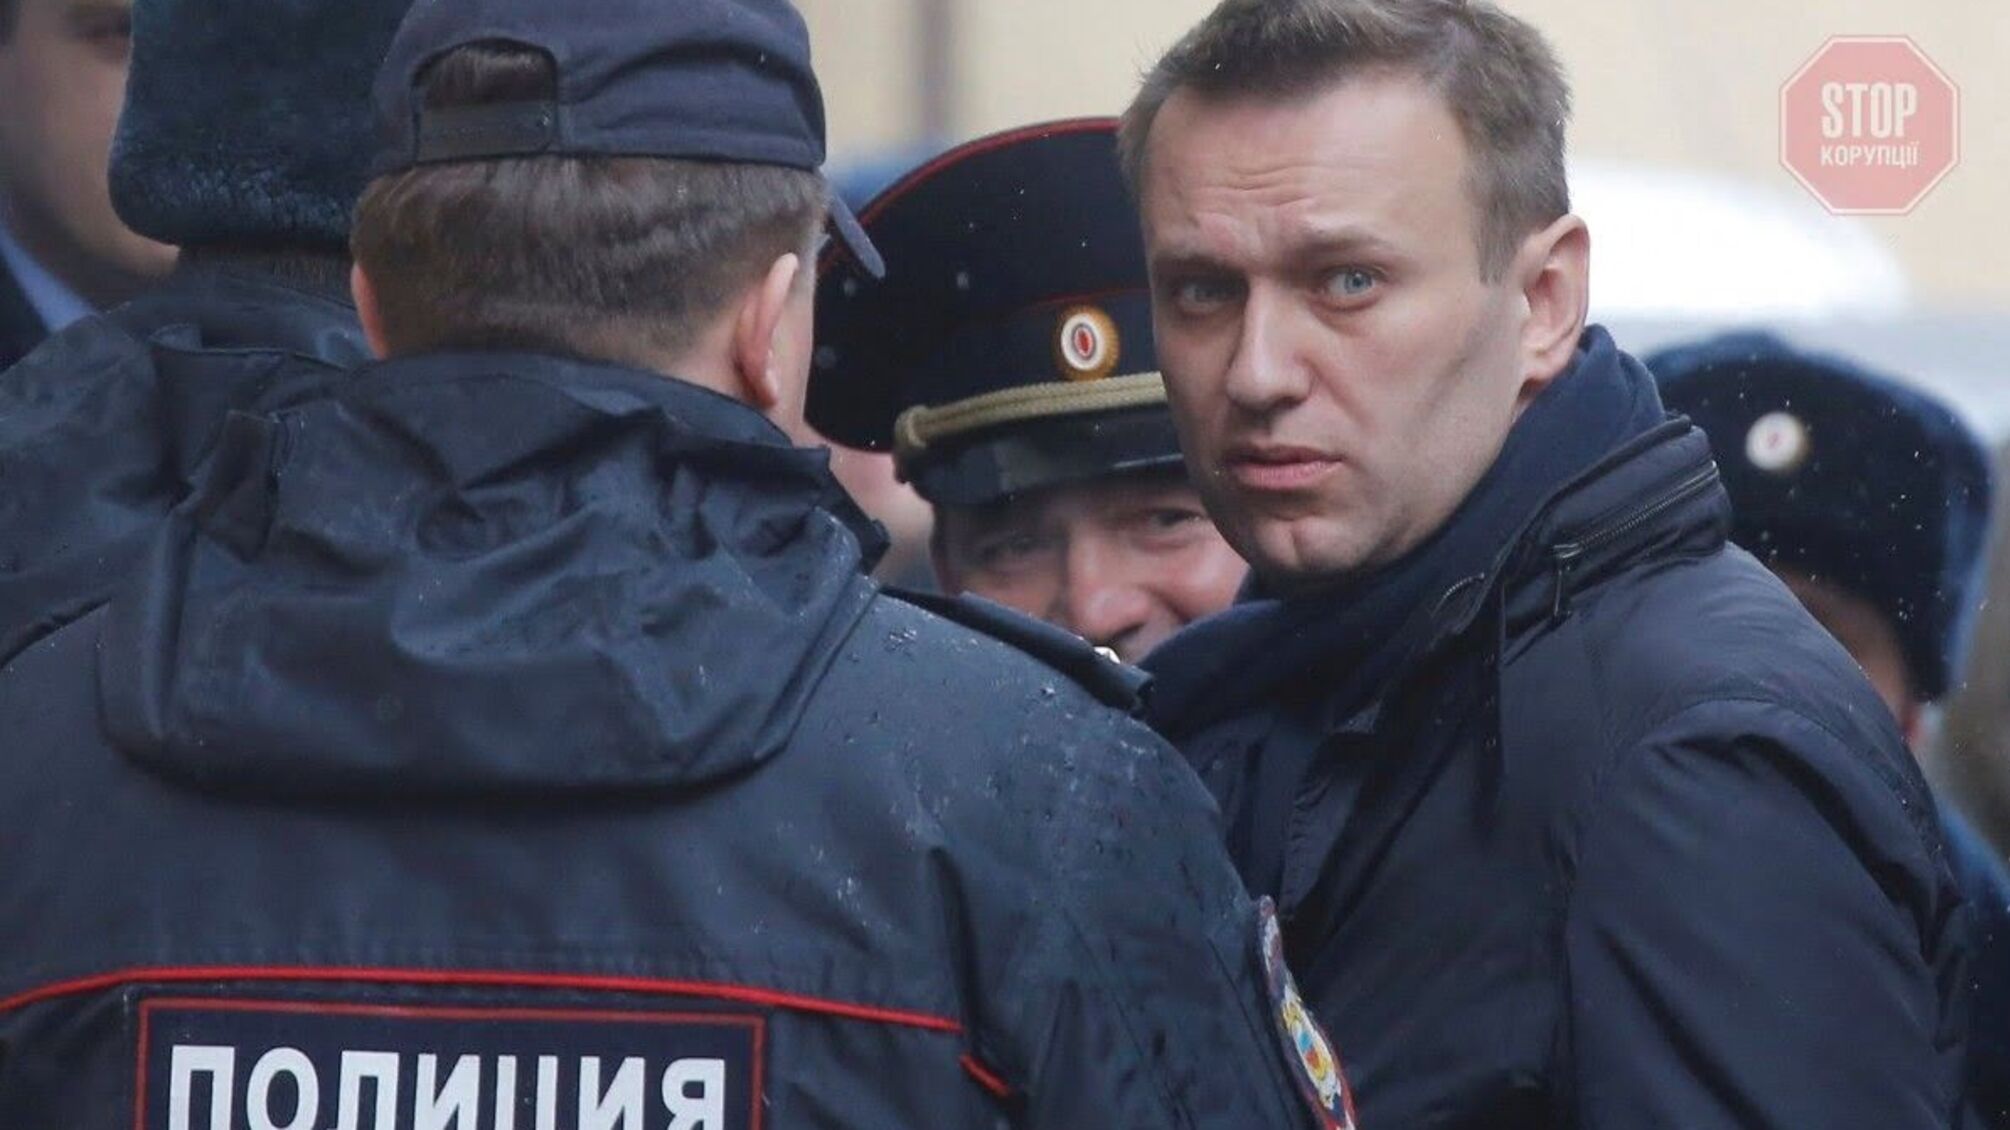 “Провокація” та “іноземні спецслужби”: у ФСБ відреагували на розмову Навального з ймовірним отруйником 